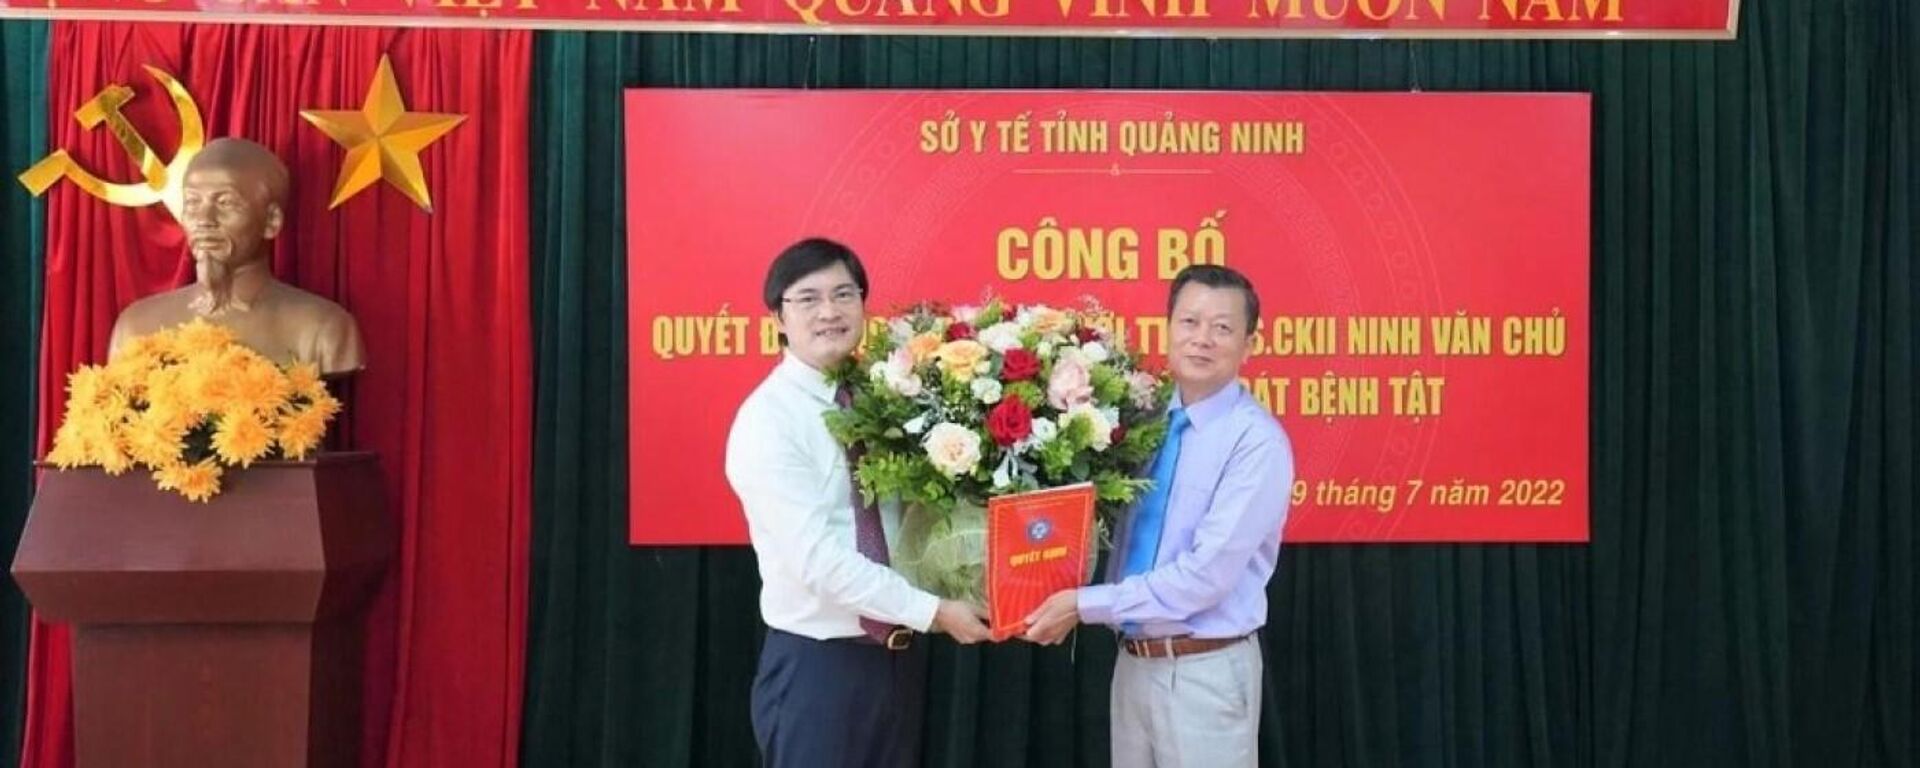 Ông Nguyễn Trọng Diện, Giám đốc Sở Y tế đã trao quyết định nghỉ hưu theo chế độ cho ông Ninh Văn Chủ - Sputnik Việt Nam, 1920, 02.08.2022